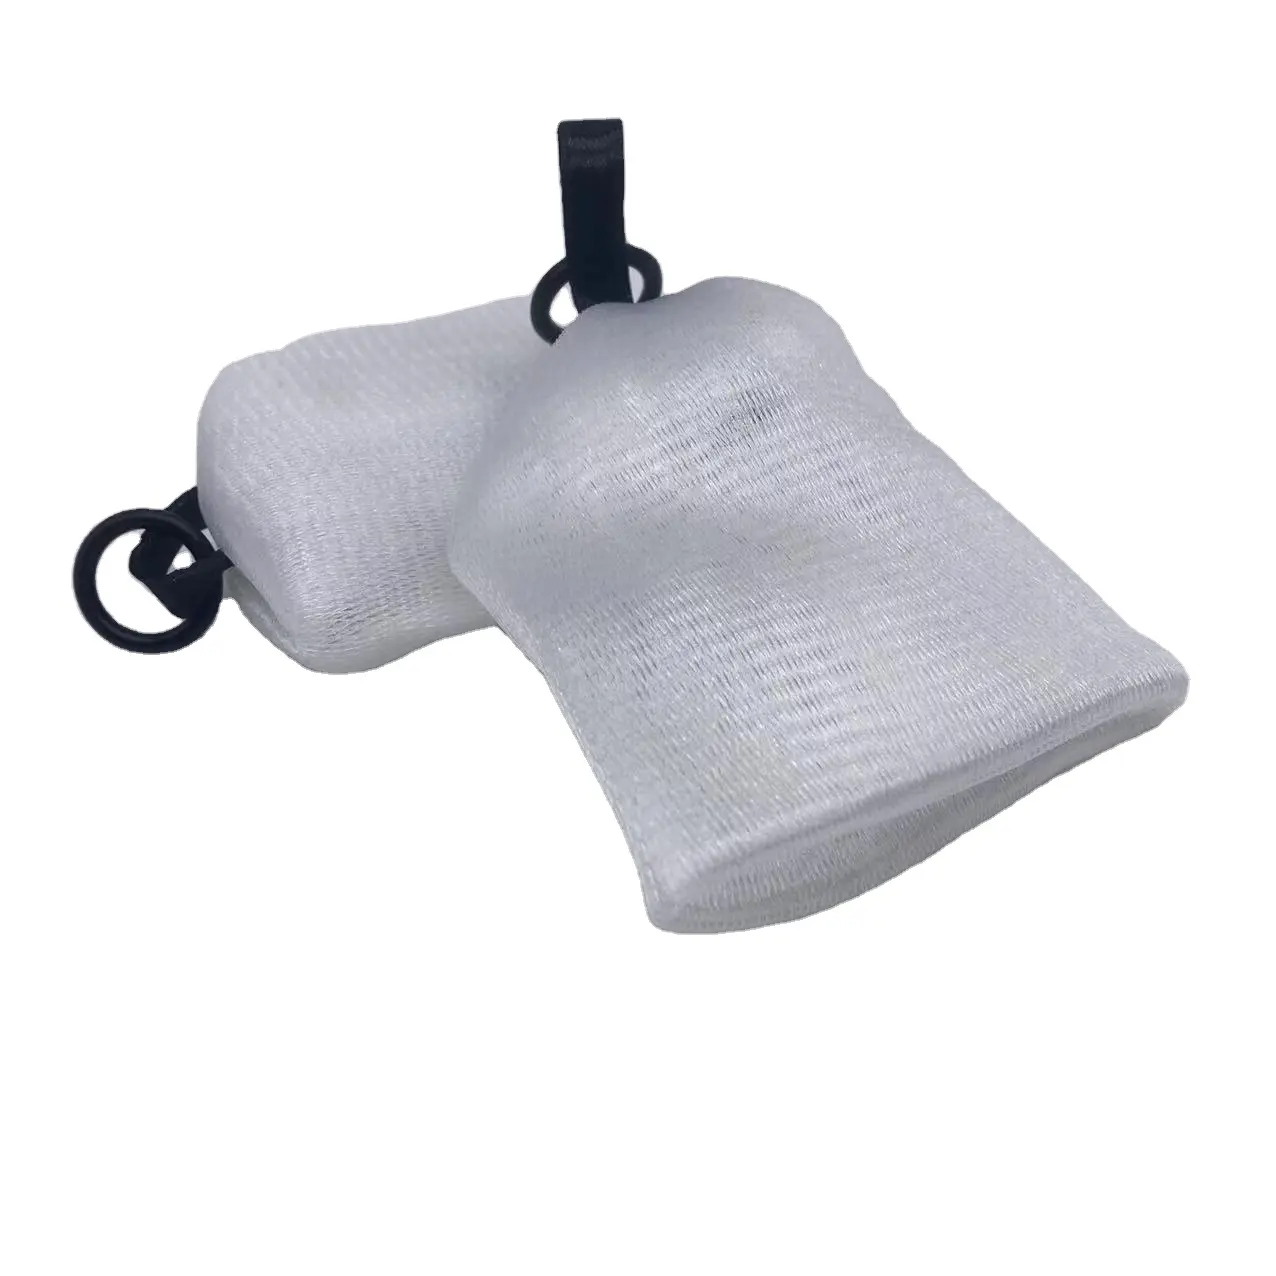 حقيبة صابون شبكية فائقة الجودة 4 طبقات, شبكة فقاعية مطورة من 4 طبقات للاستخدام مع غسل الوجه ، مما يوفر شبكة رغوية إضافية كثيفة